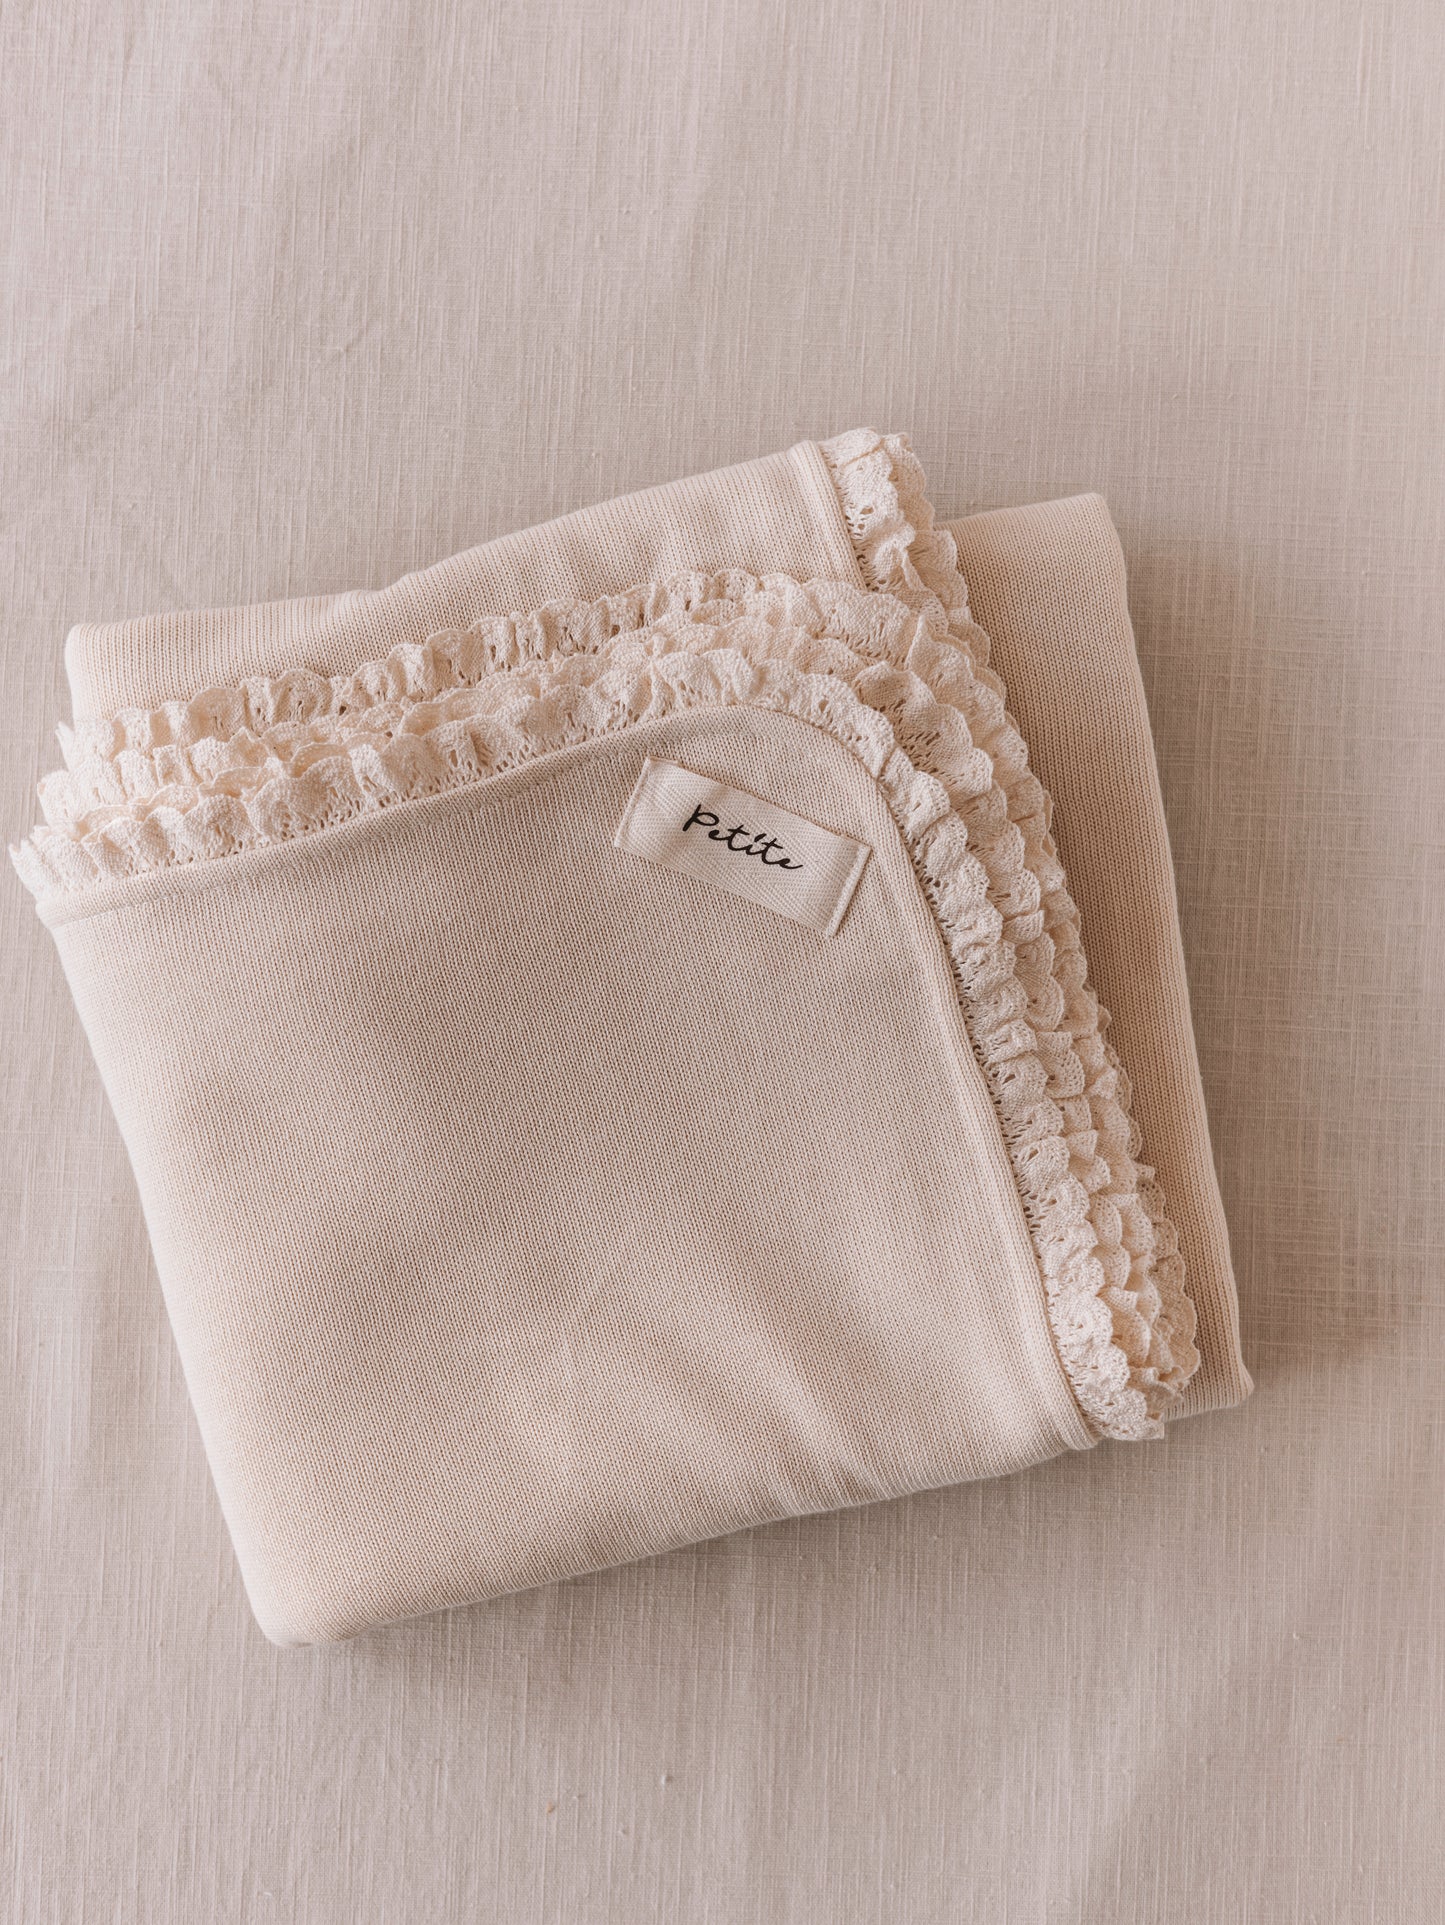 Knit + Muslin Blanket /  buttercream + lace